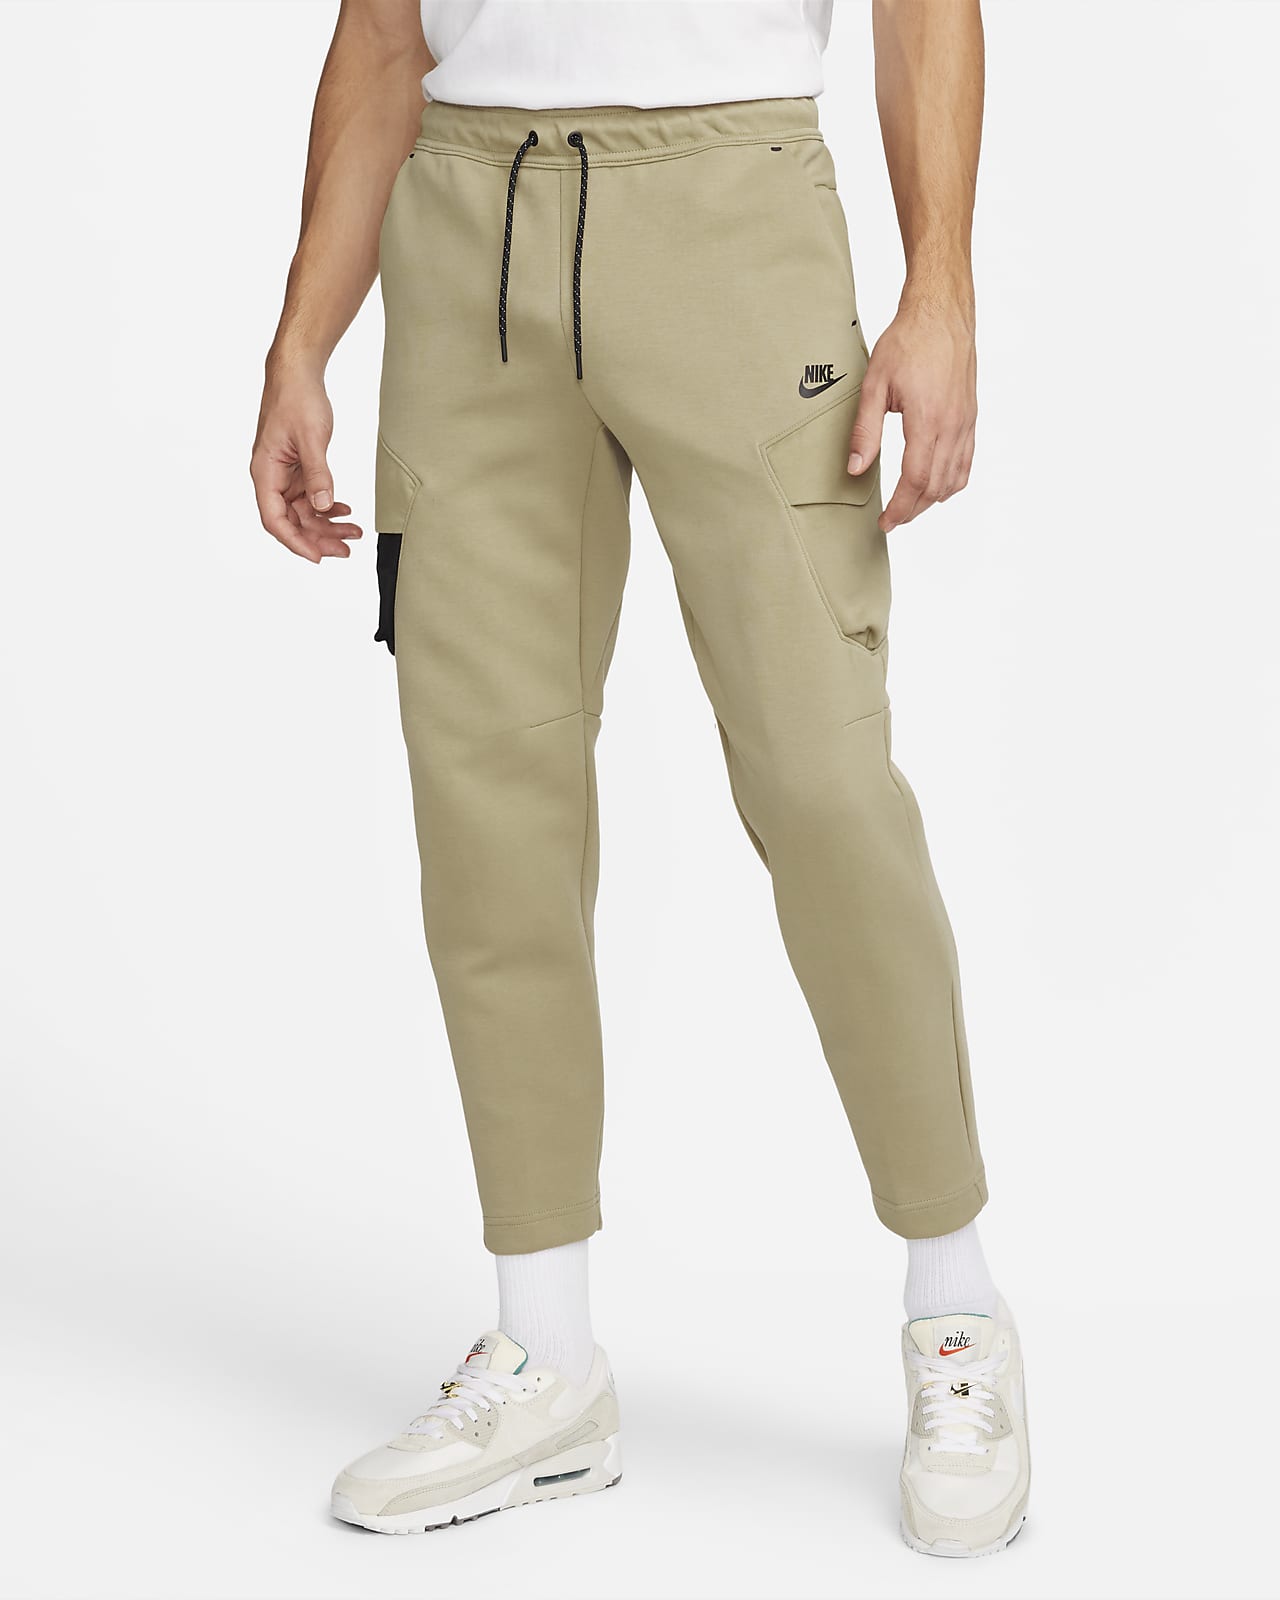 Nike Sportswear Tech Fleece Pants W Nsw Tch Flc Hr Pnt Etcf OatmealBlack   Stylerunner